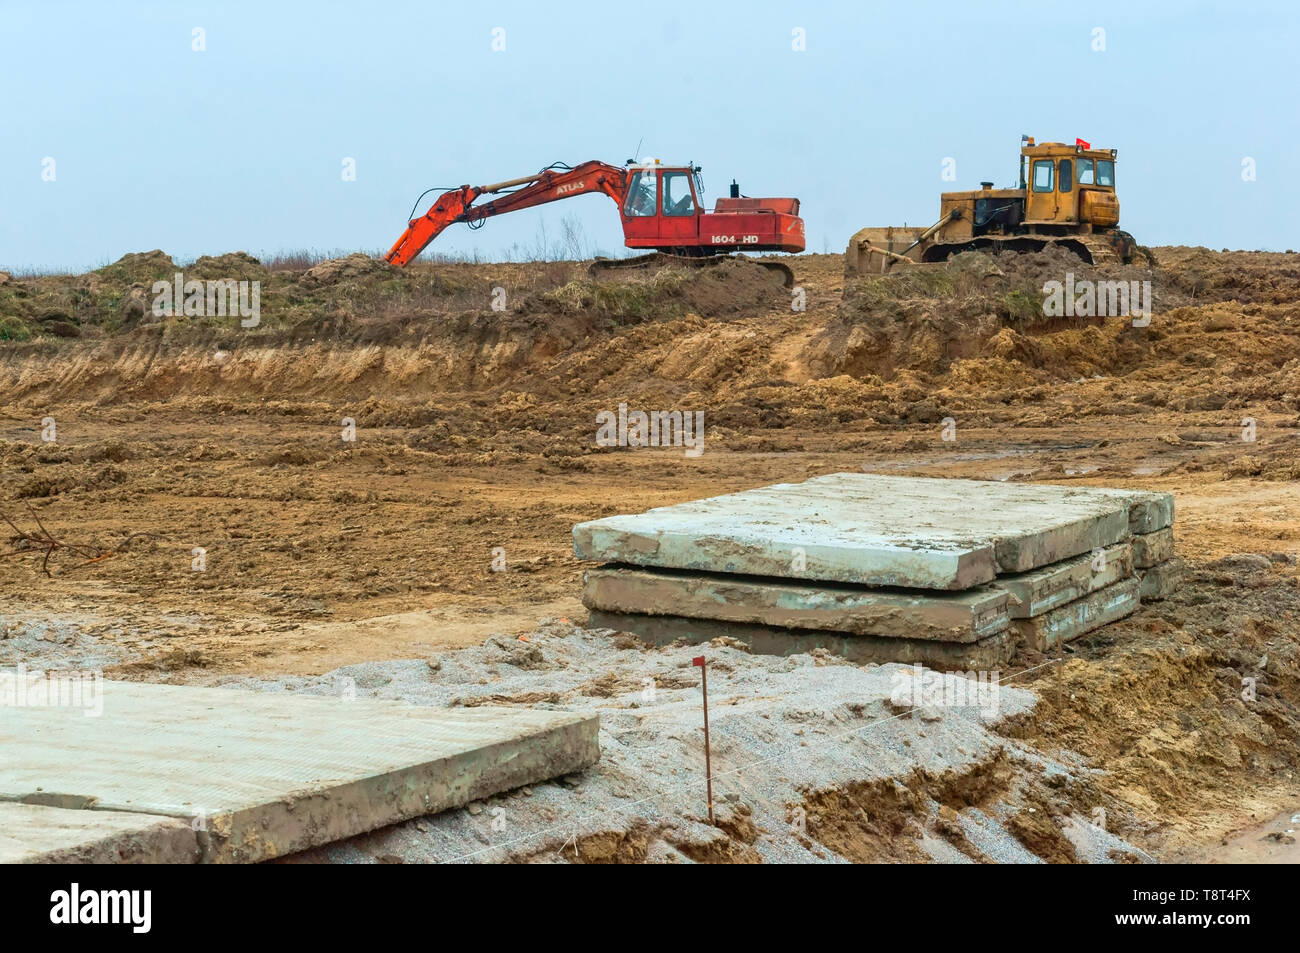 Baumaschinen im Bereich, Betonplatten auf dem Boden und Bagger, der Region Kaliningrad, Russland, 3. März 2019 Stockfoto